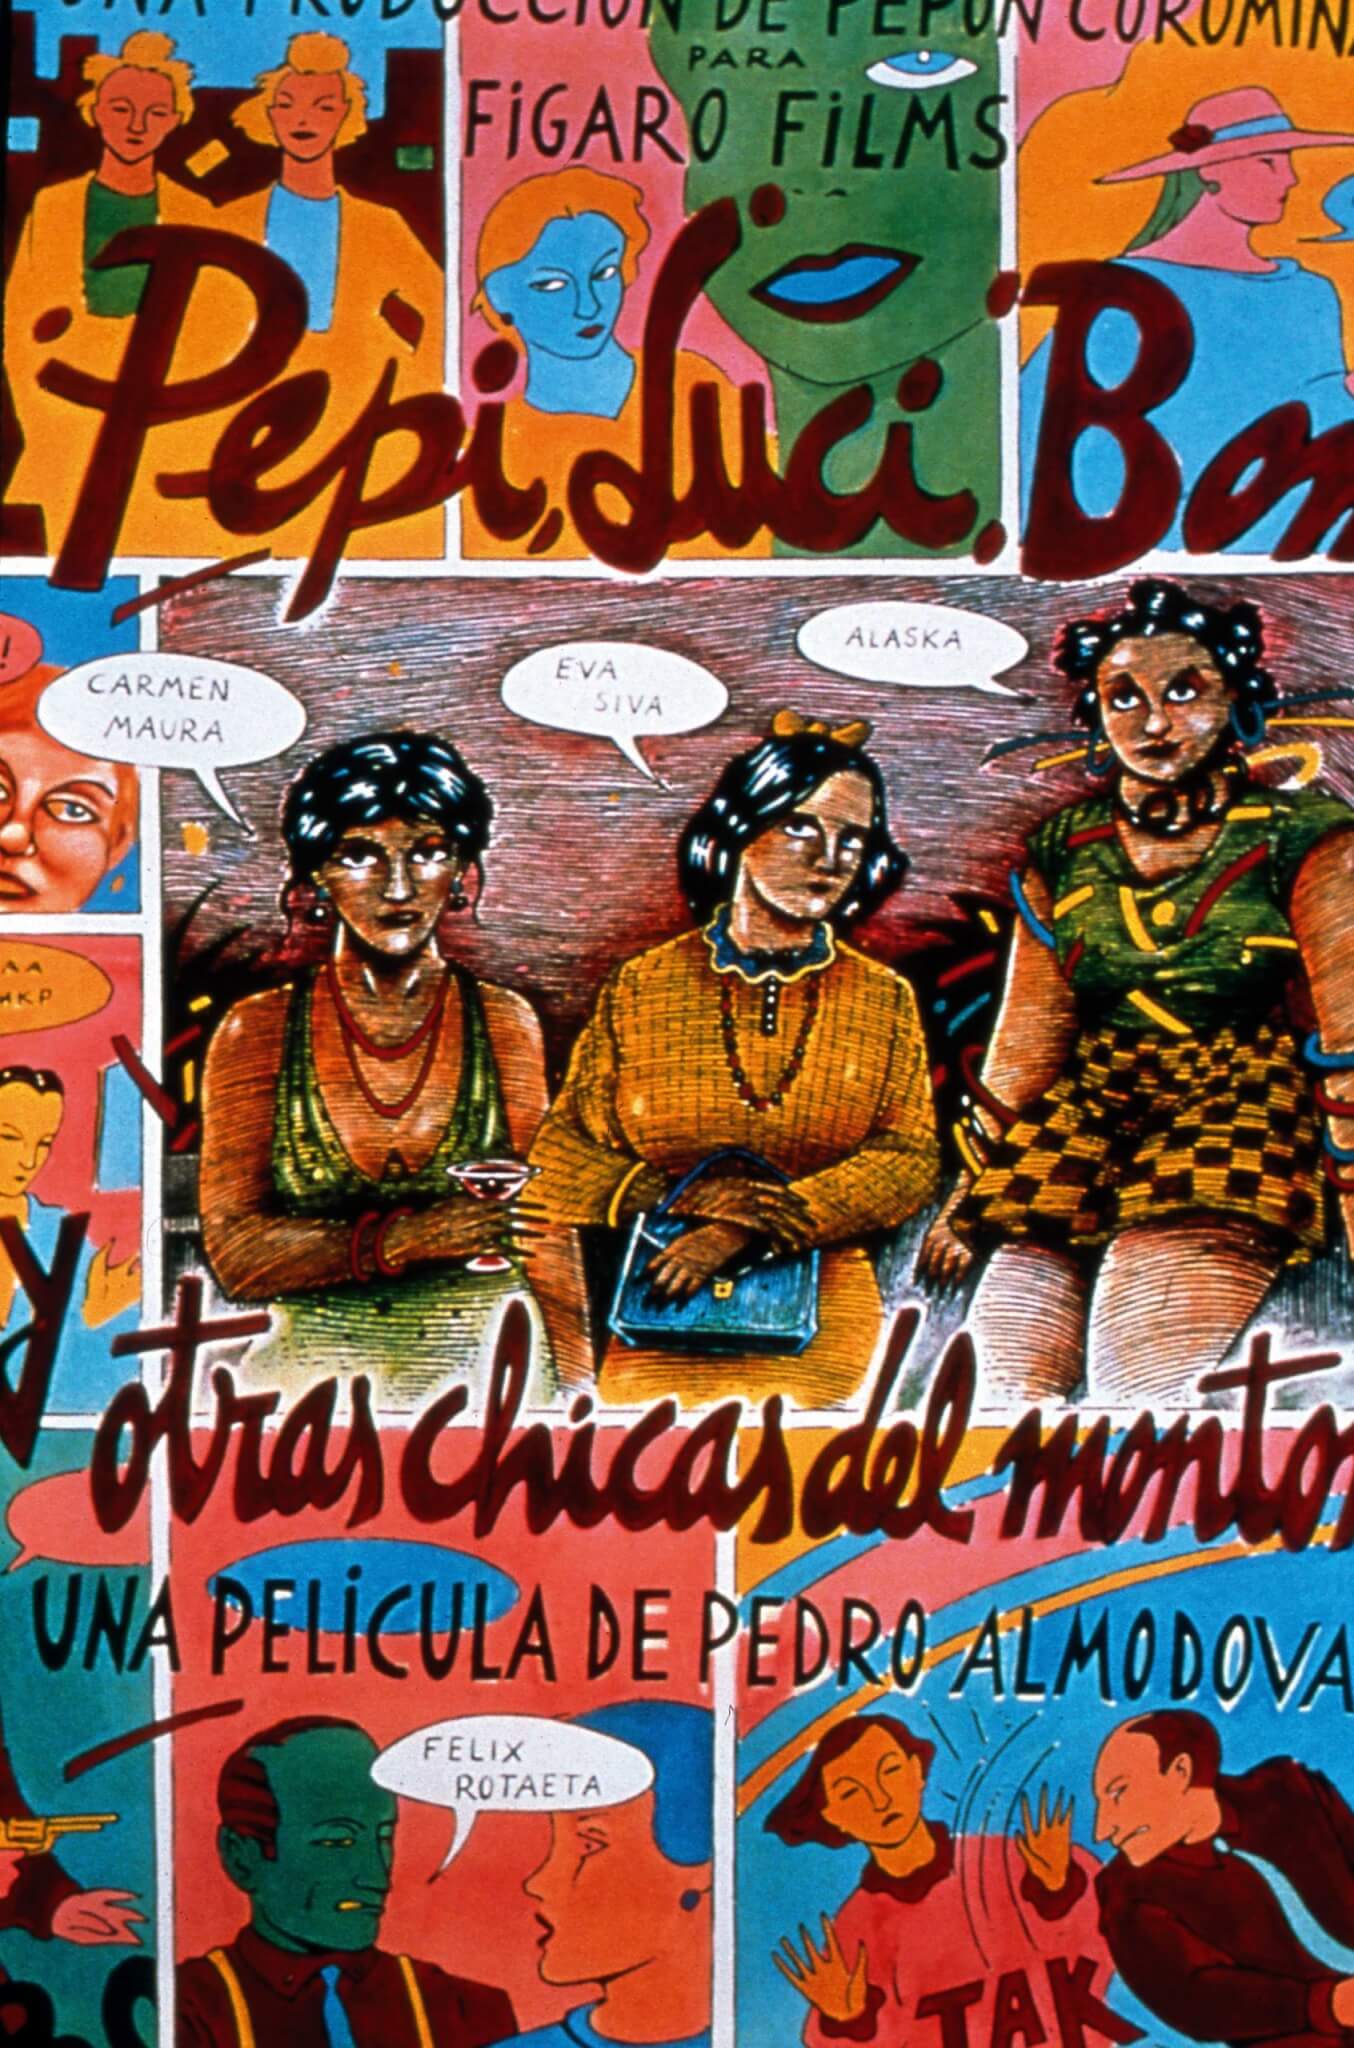 Pepi, Luci, Bom e le altre ragazze del mucchio, 40 anni fa Pedro Almodovar faceva il suo esordio alla regia - Pepi Luci Bom poster scaled - Gay.it